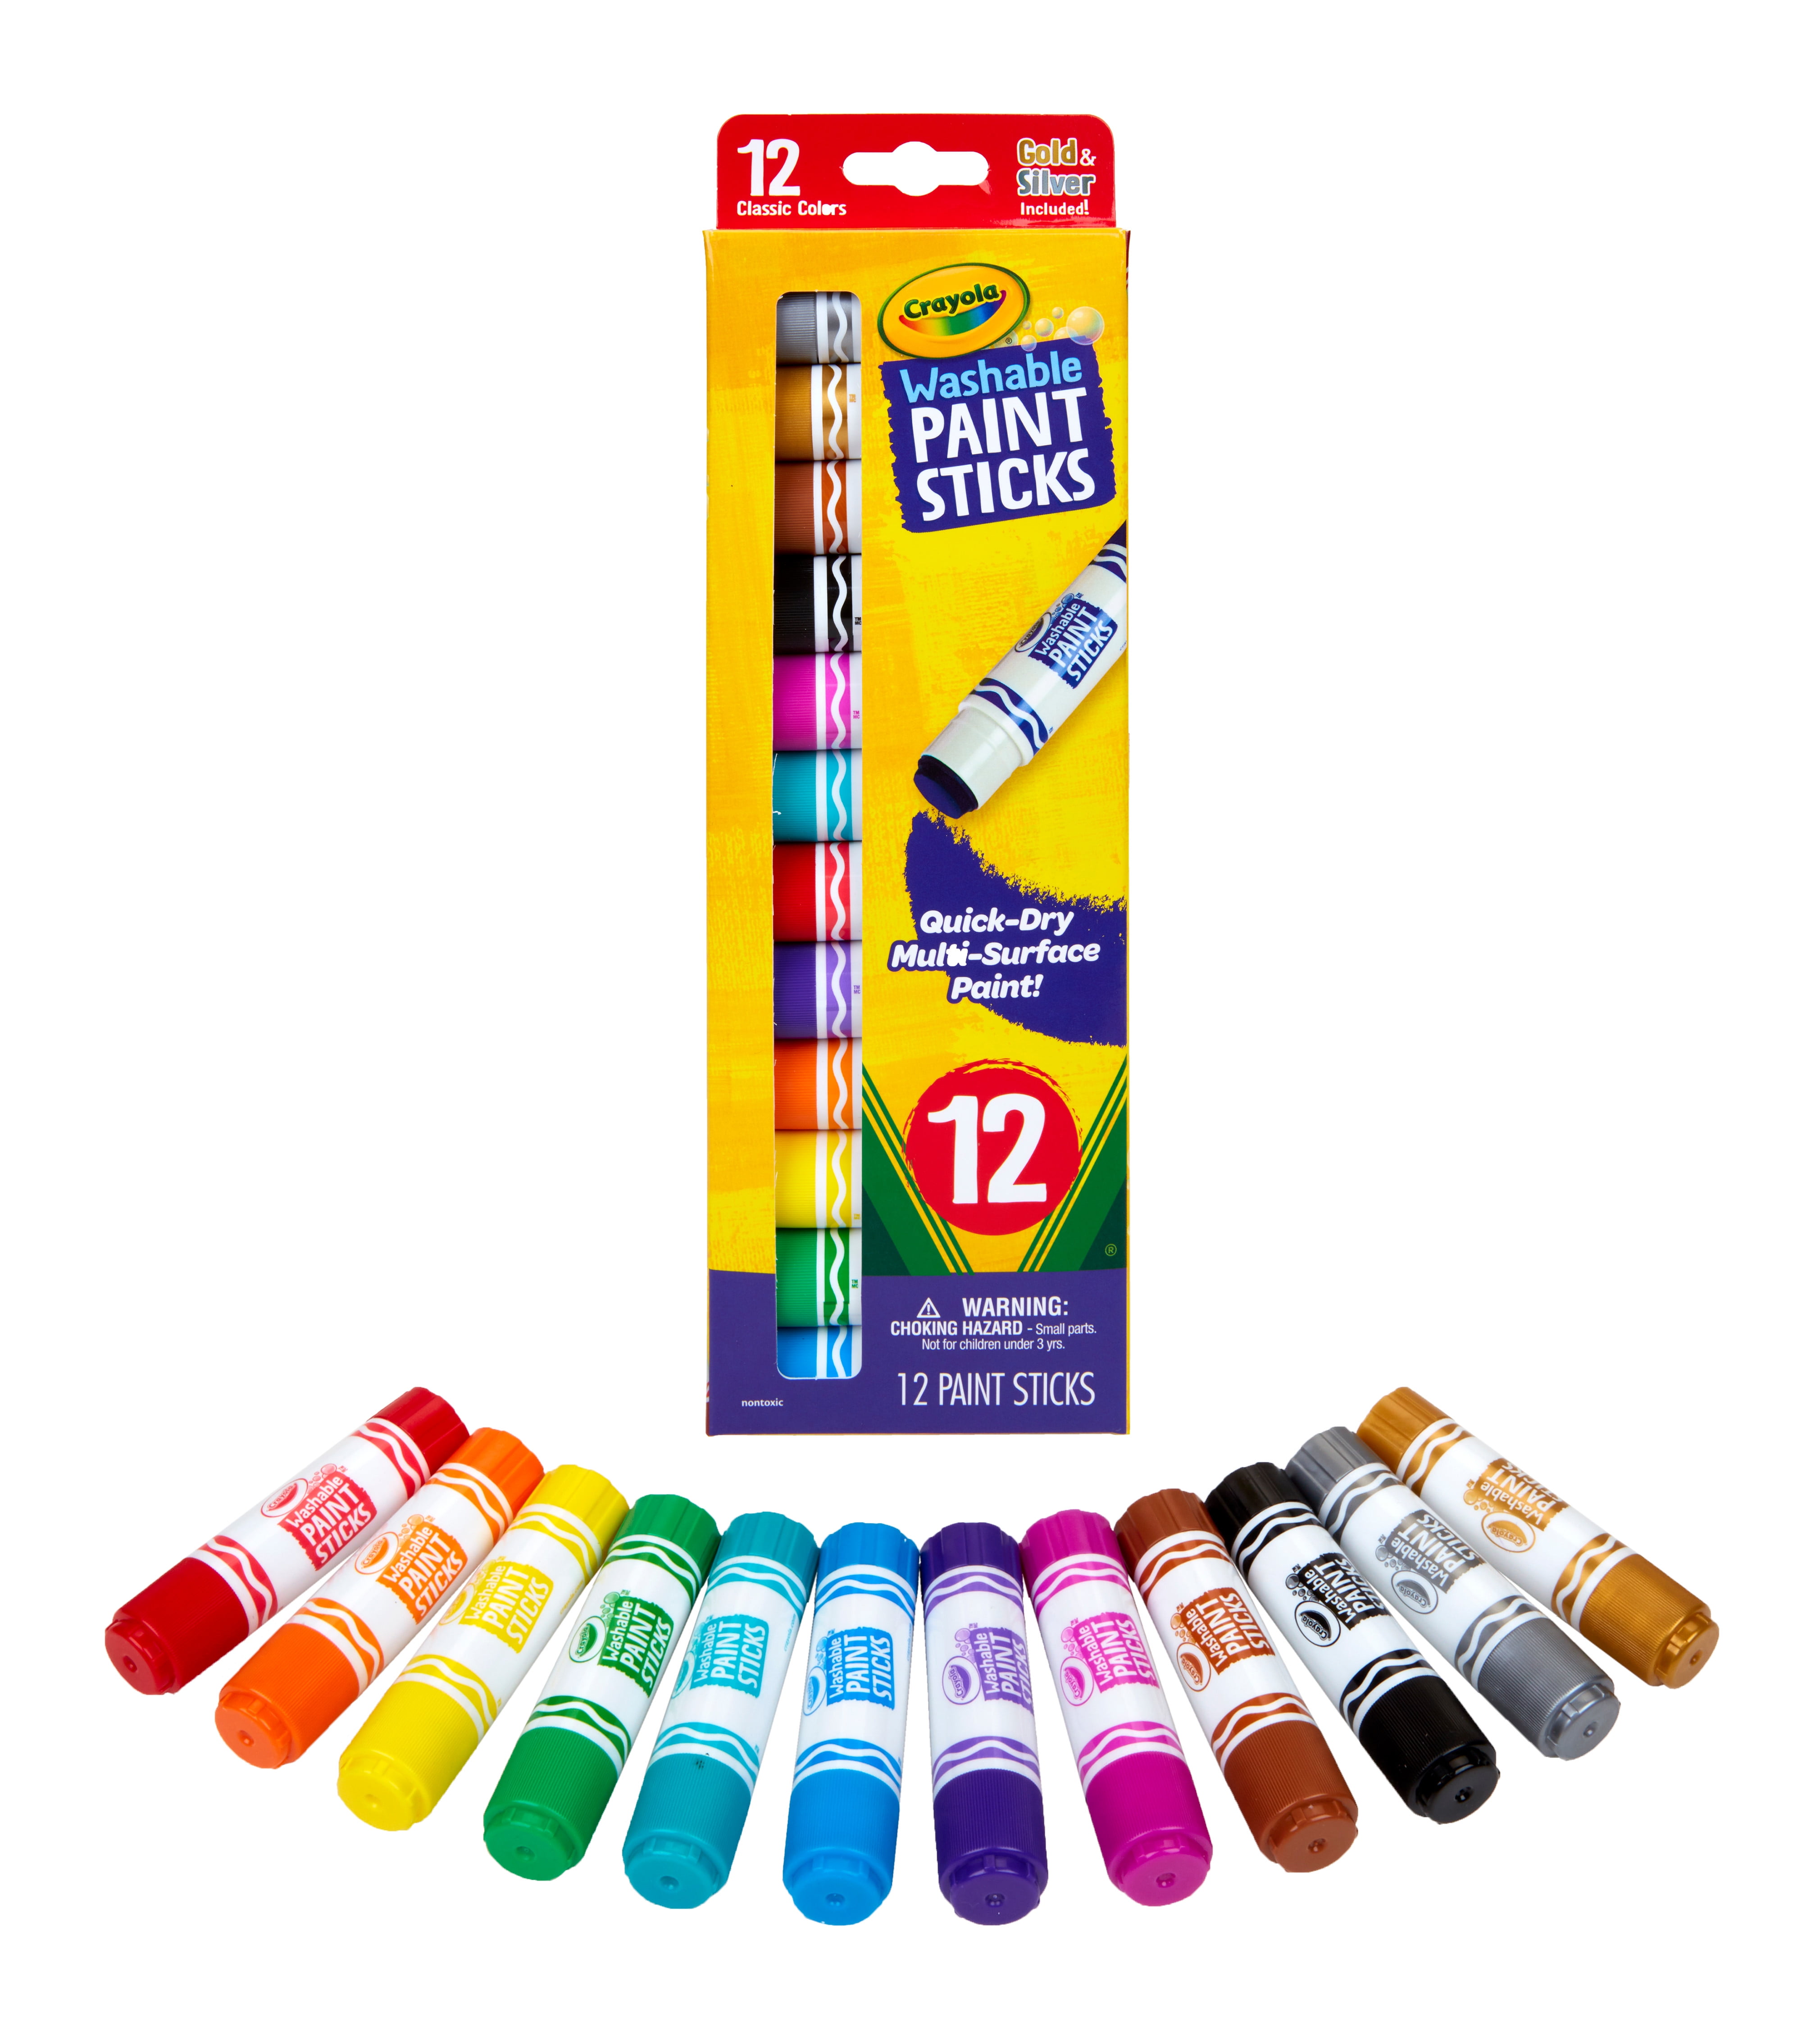 Crayola® 6 Color Washable Kids' Paint Set